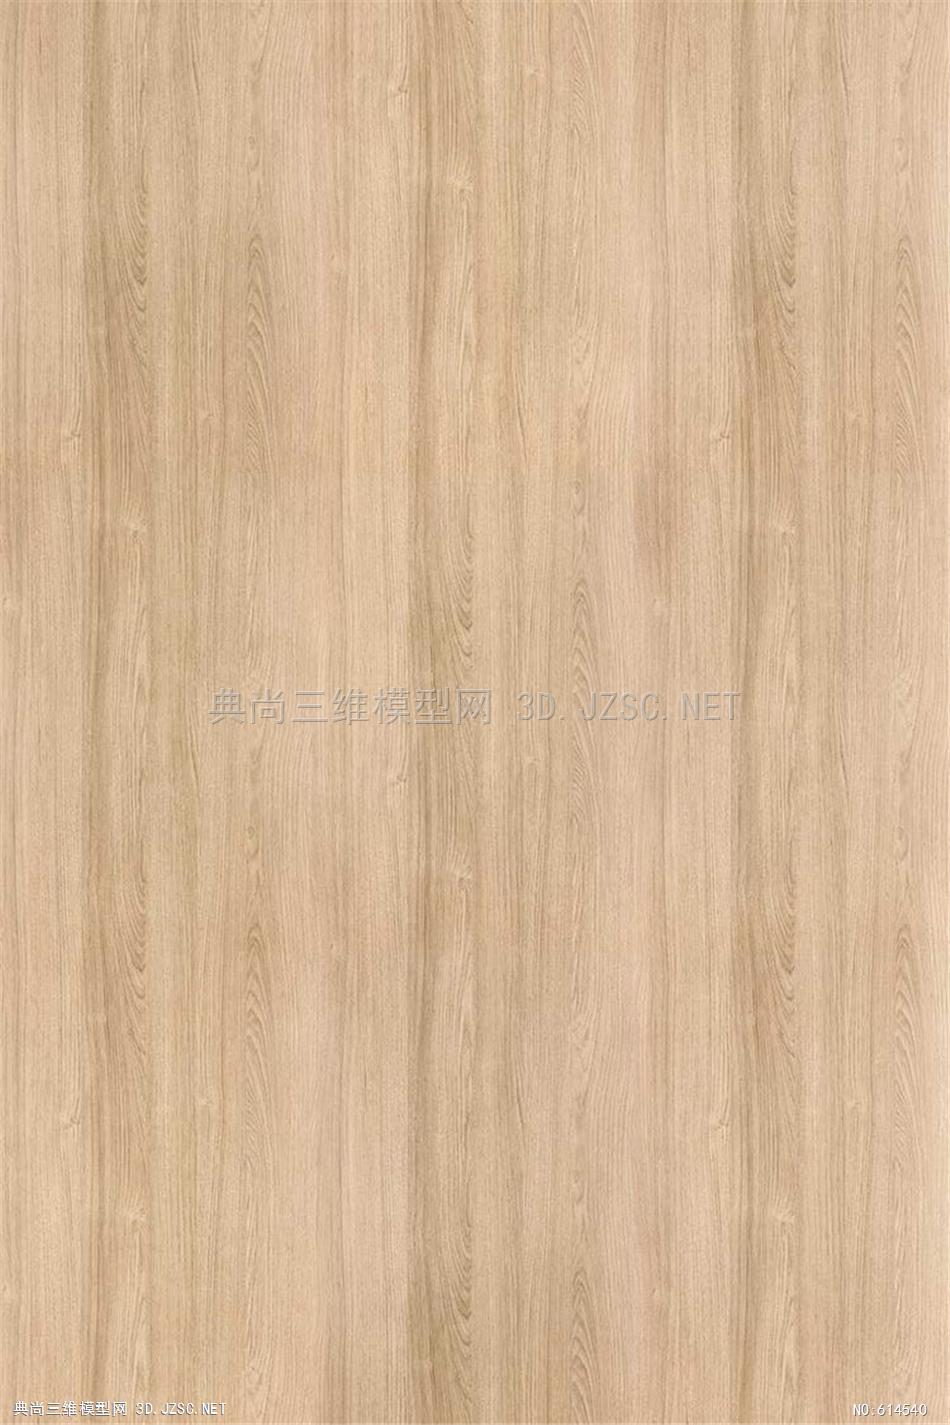 木饰面 木纹 木材  高清材质贴图 (336)